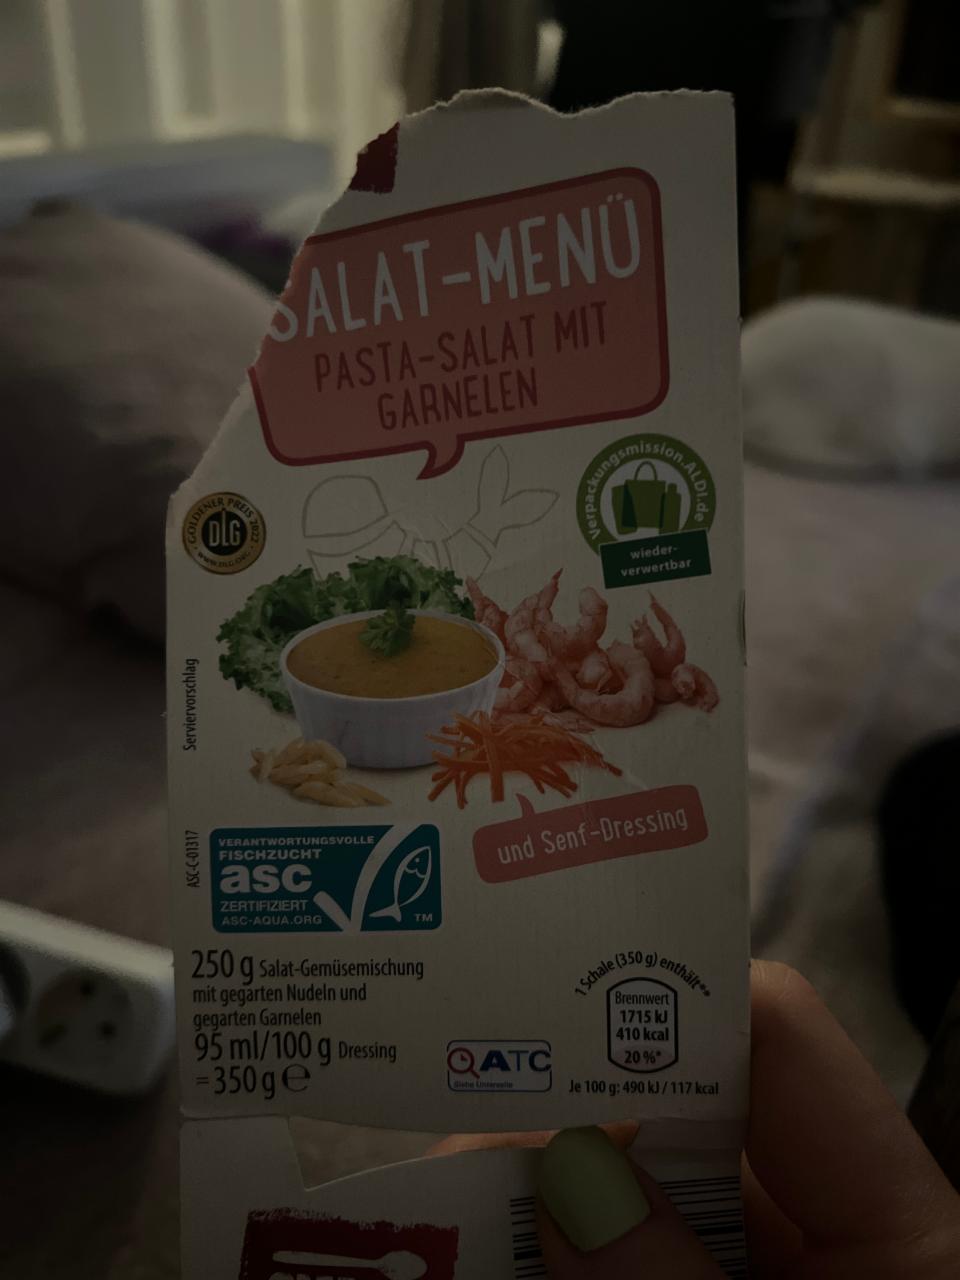 Фото - салат с пастой и креветками Salat Menu